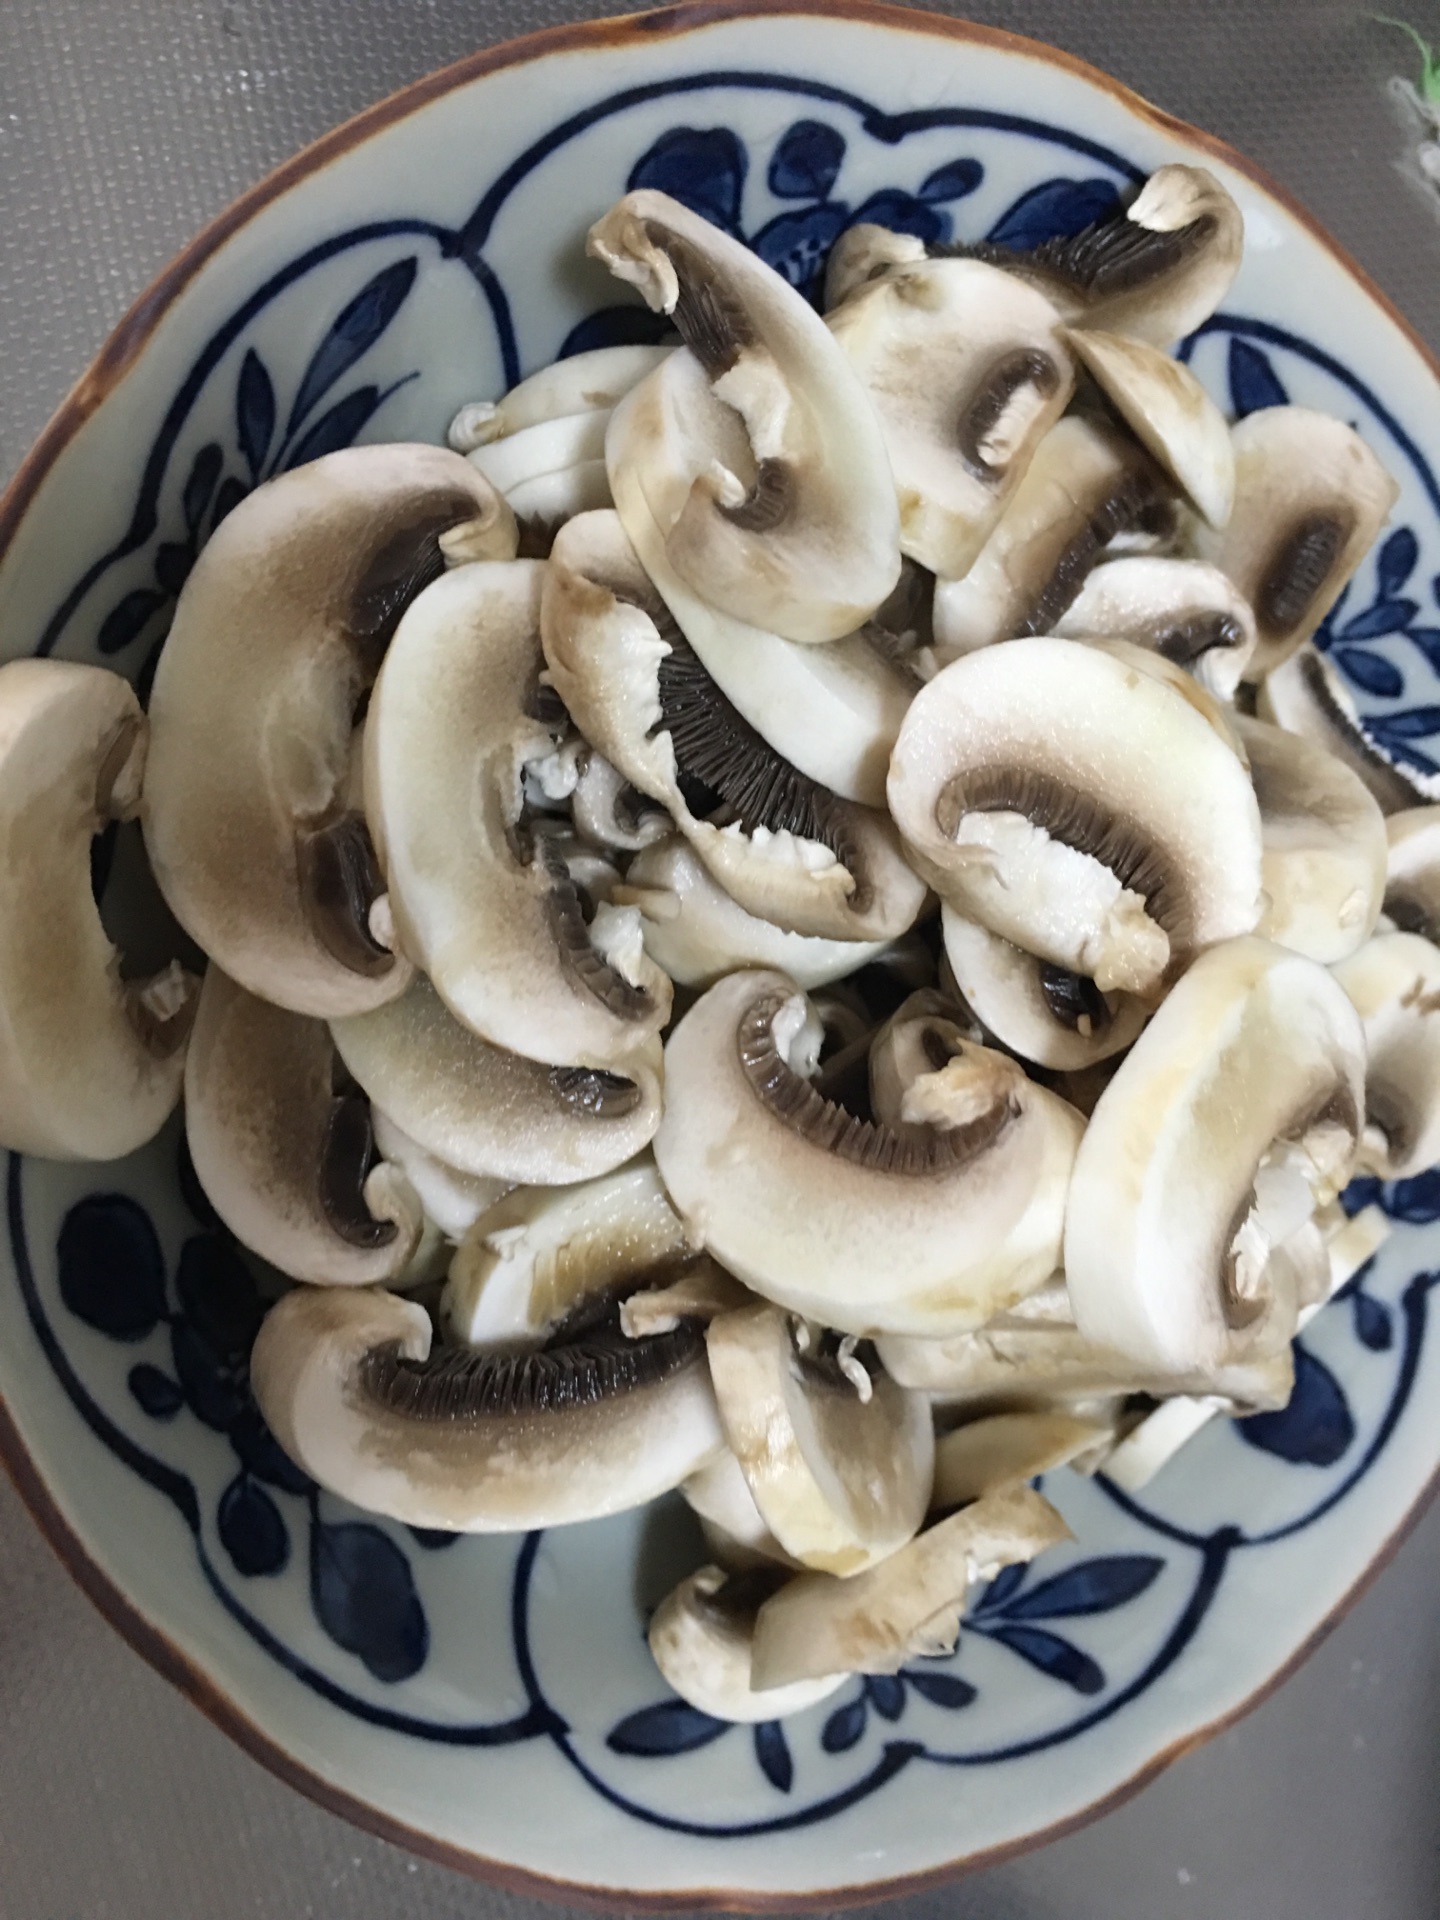 青椒炒蘑菇,青椒炒蘑菇的家常做法 - 美食杰青椒炒蘑菇做法大全